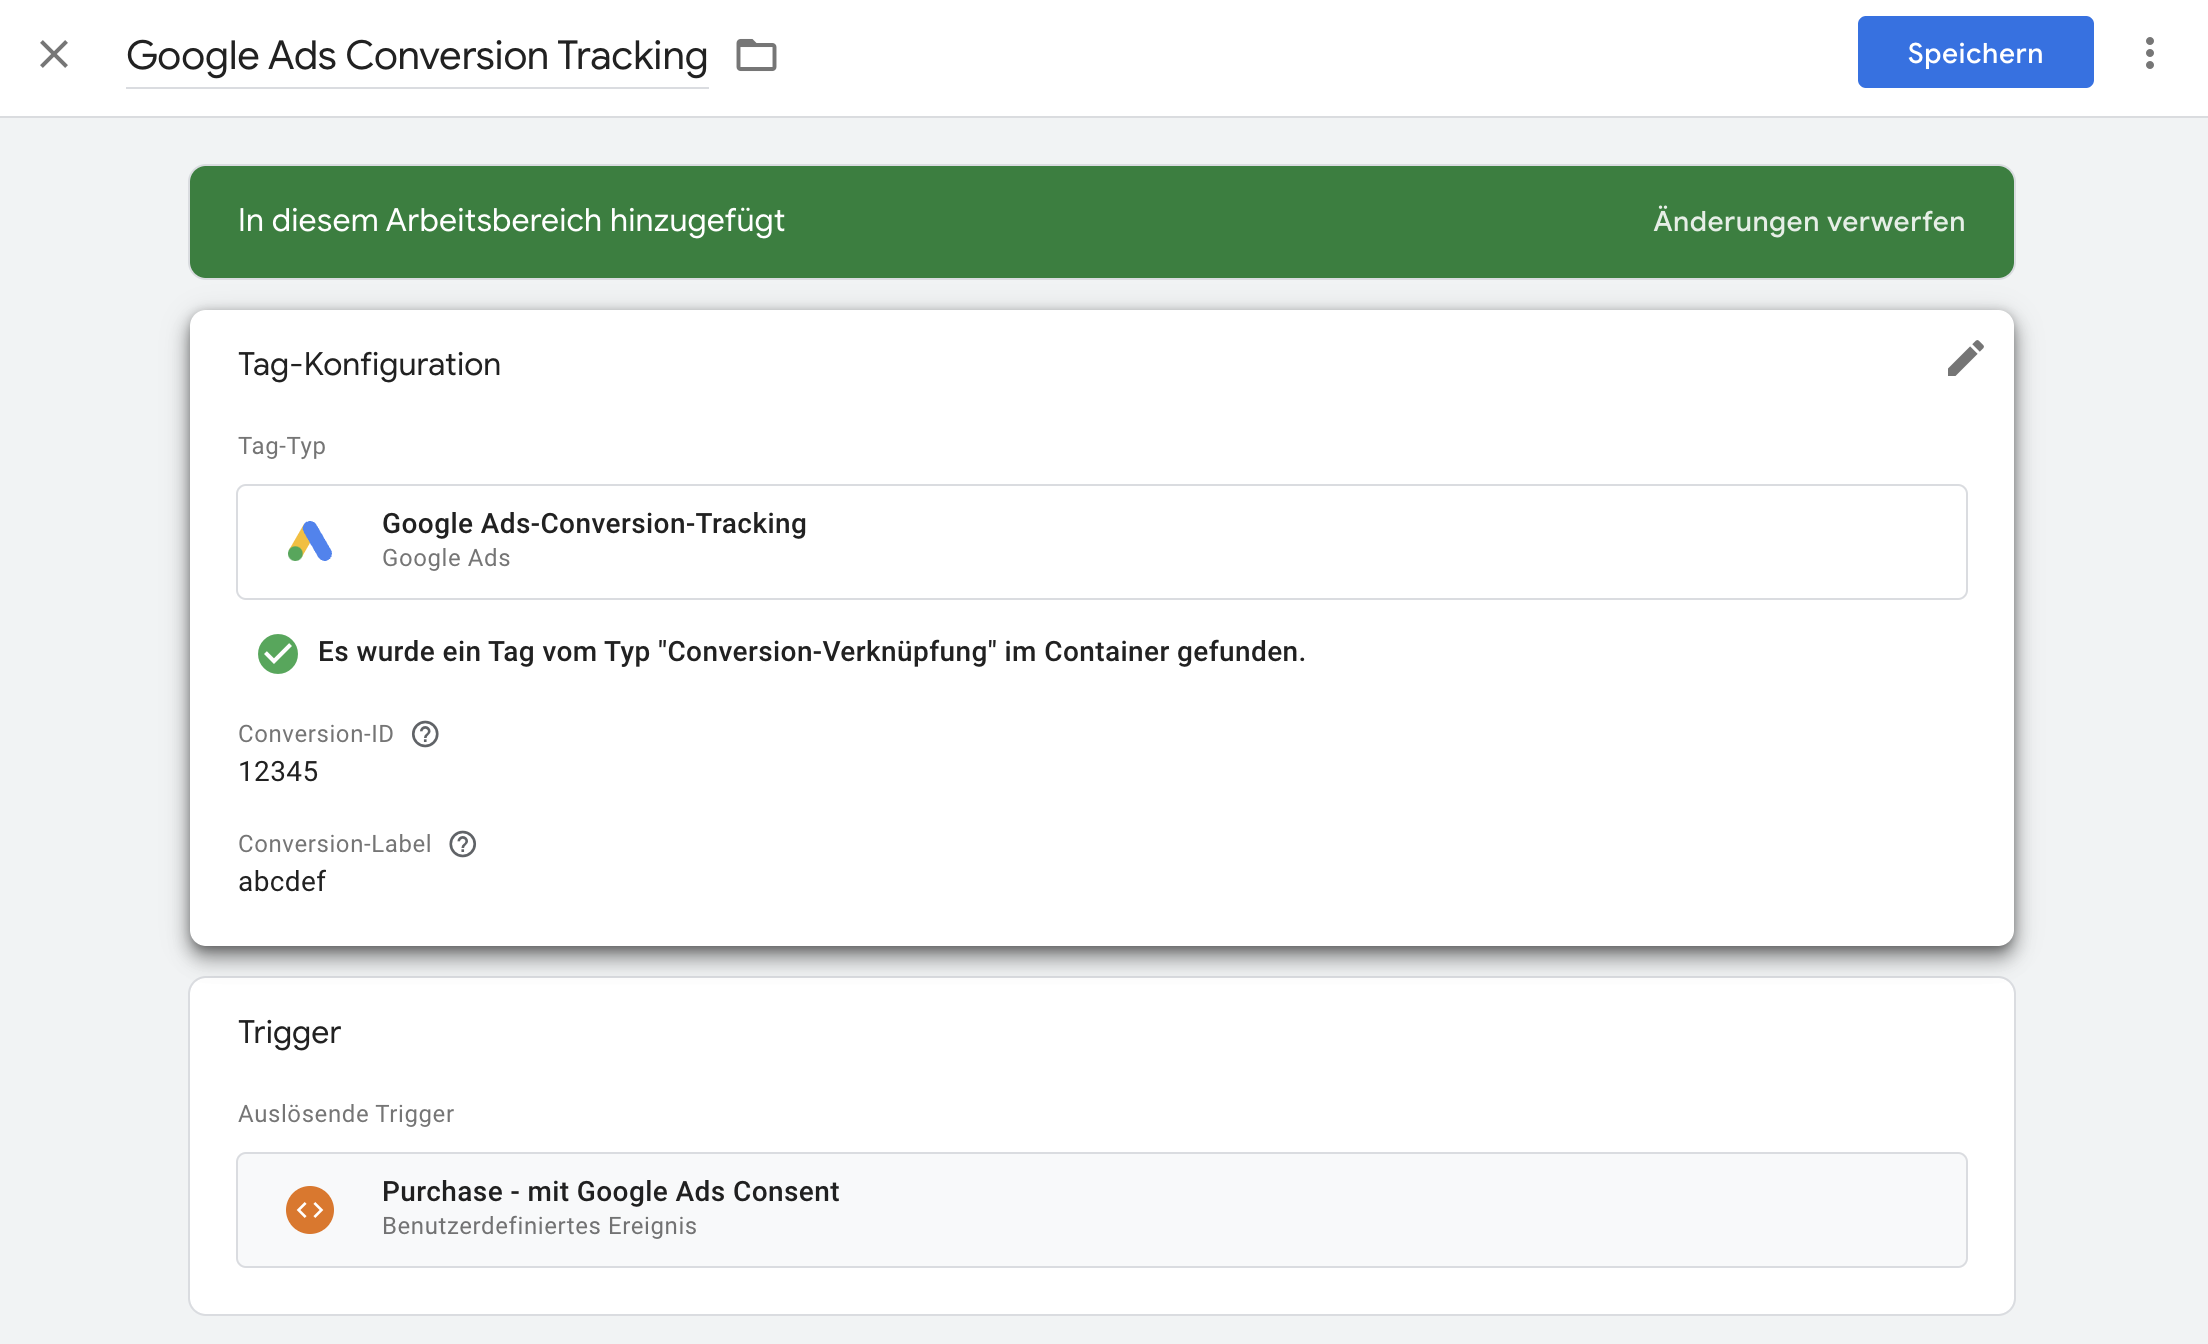 Tag-Konfiguration für Google Ads Conversion Tracking bei Kauf ausgelöst